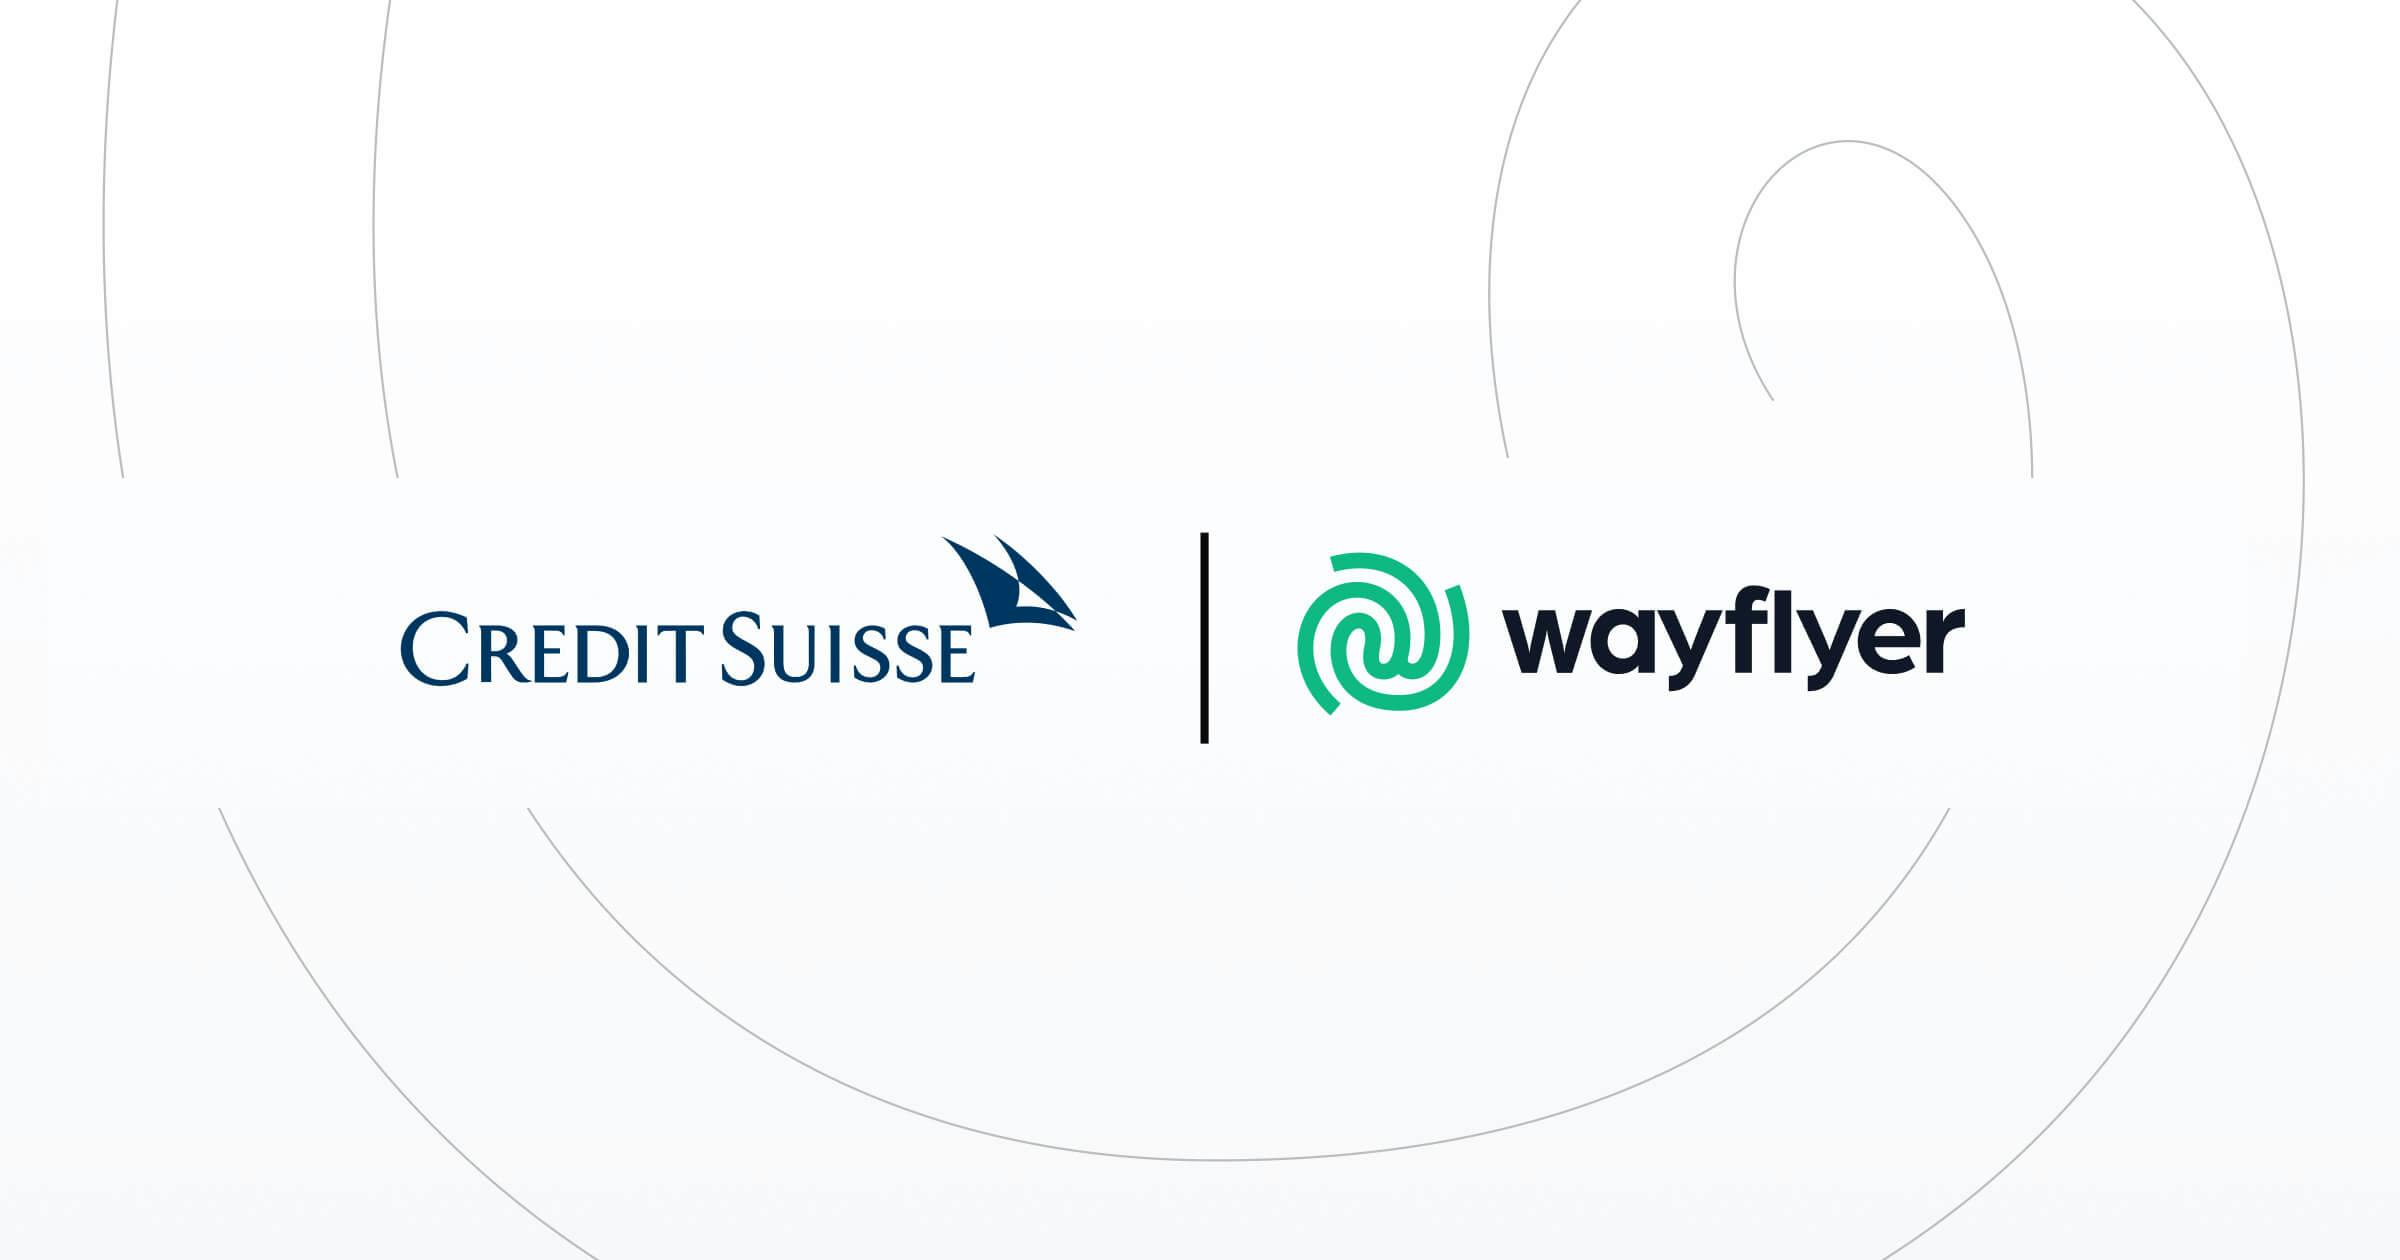 Logotipos de Credit Suisse y Wayflyer separados por una barra